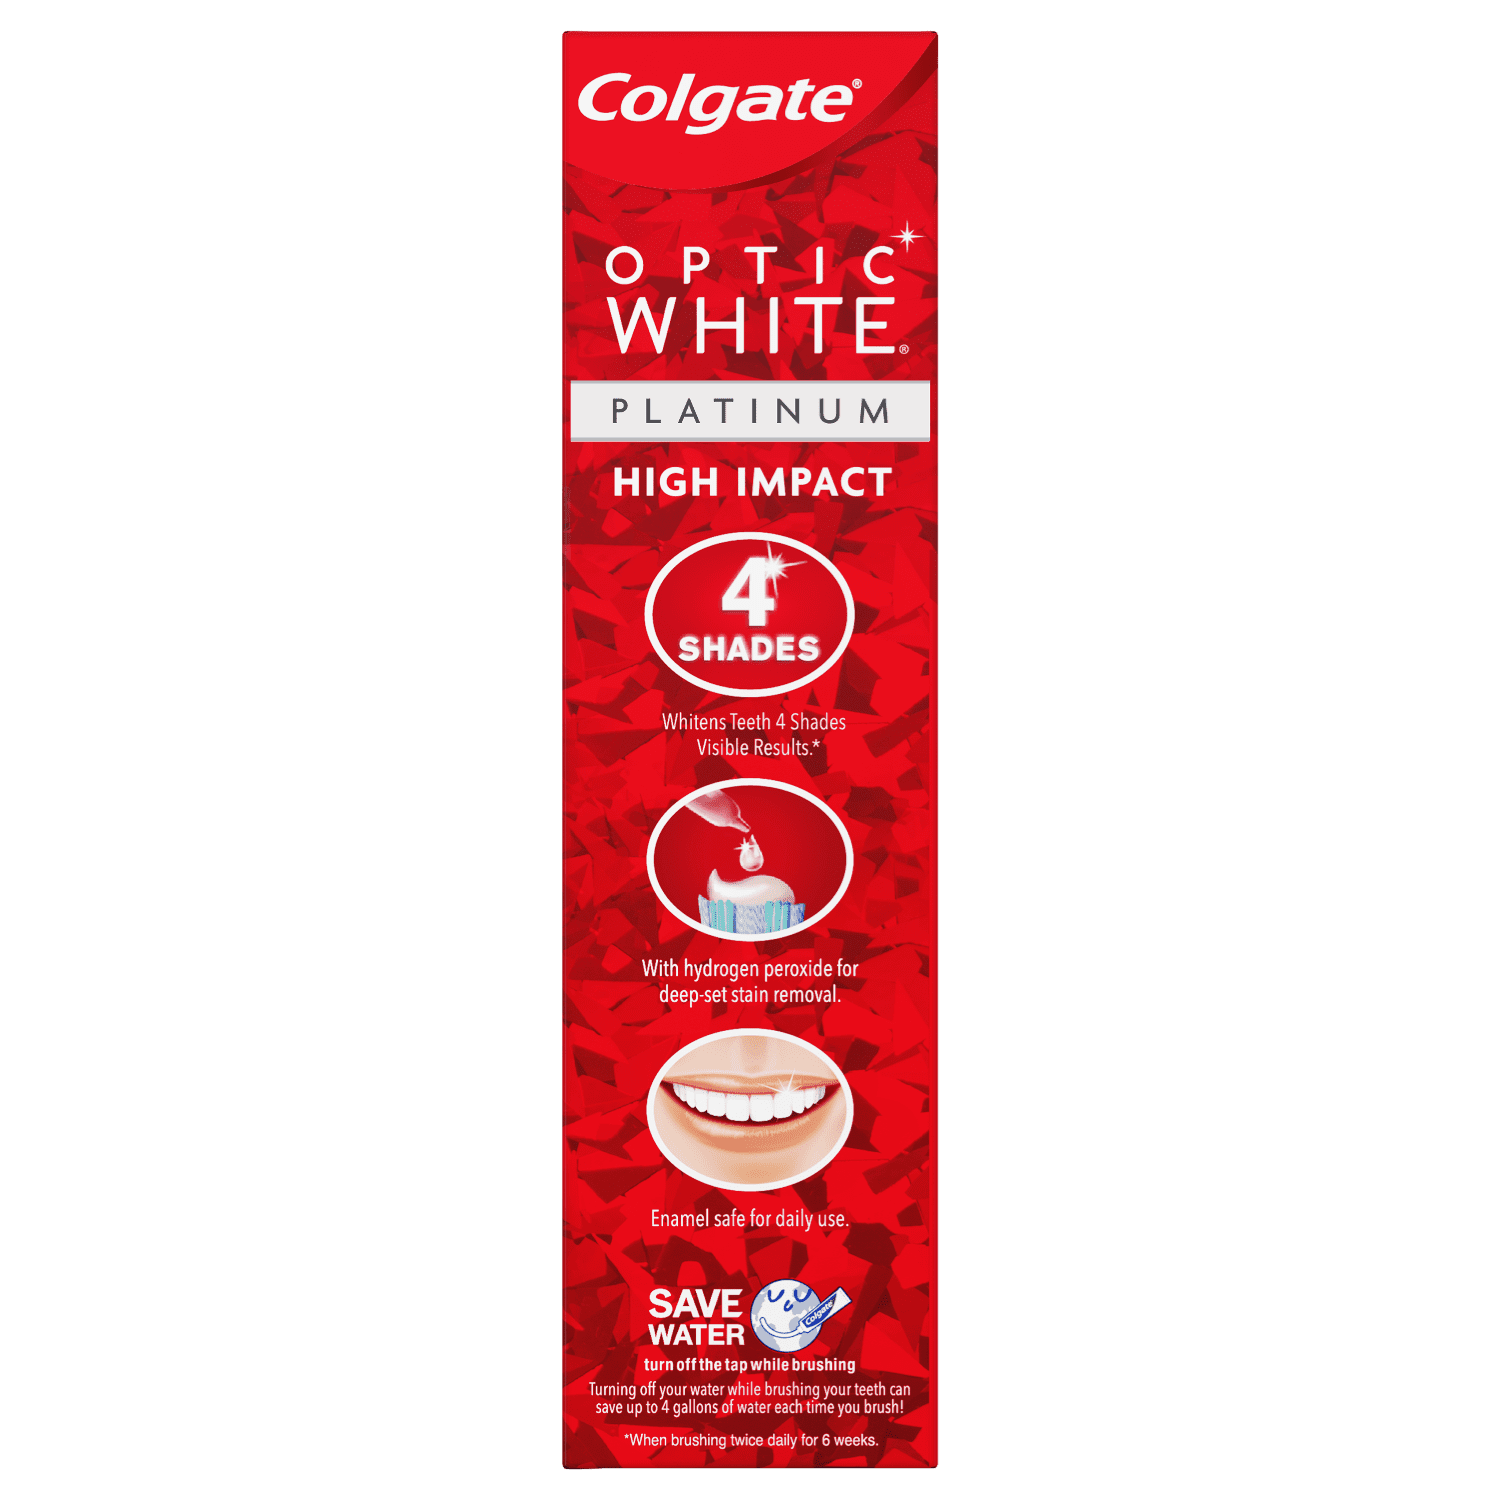 Colgate Optic White High Impact White Whitening Toothpaste